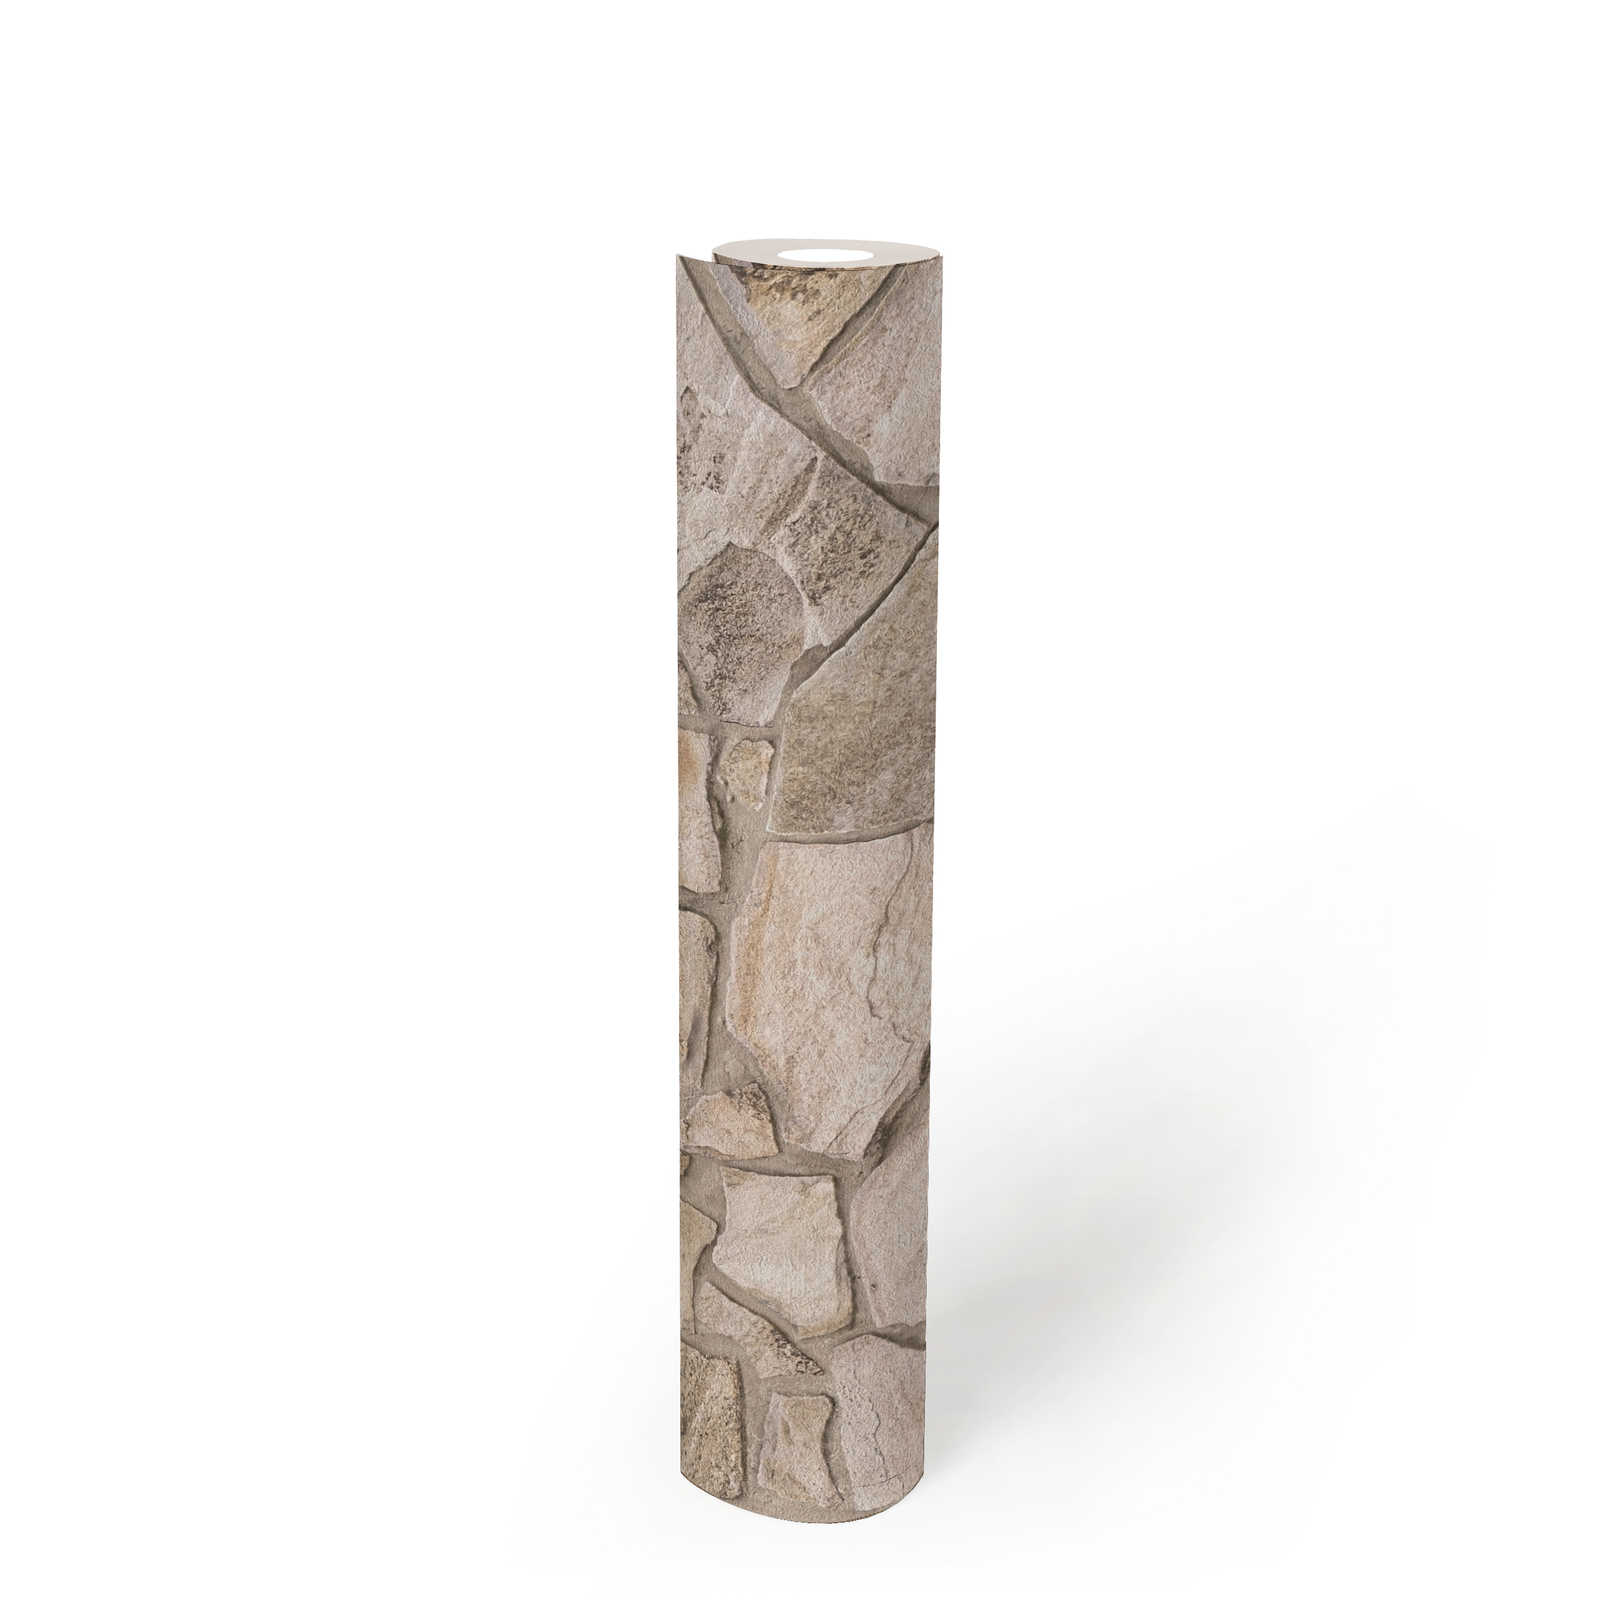             Papier peint intissé imitation pierre avec maçonnerie 3D - beige, gris, marron
        